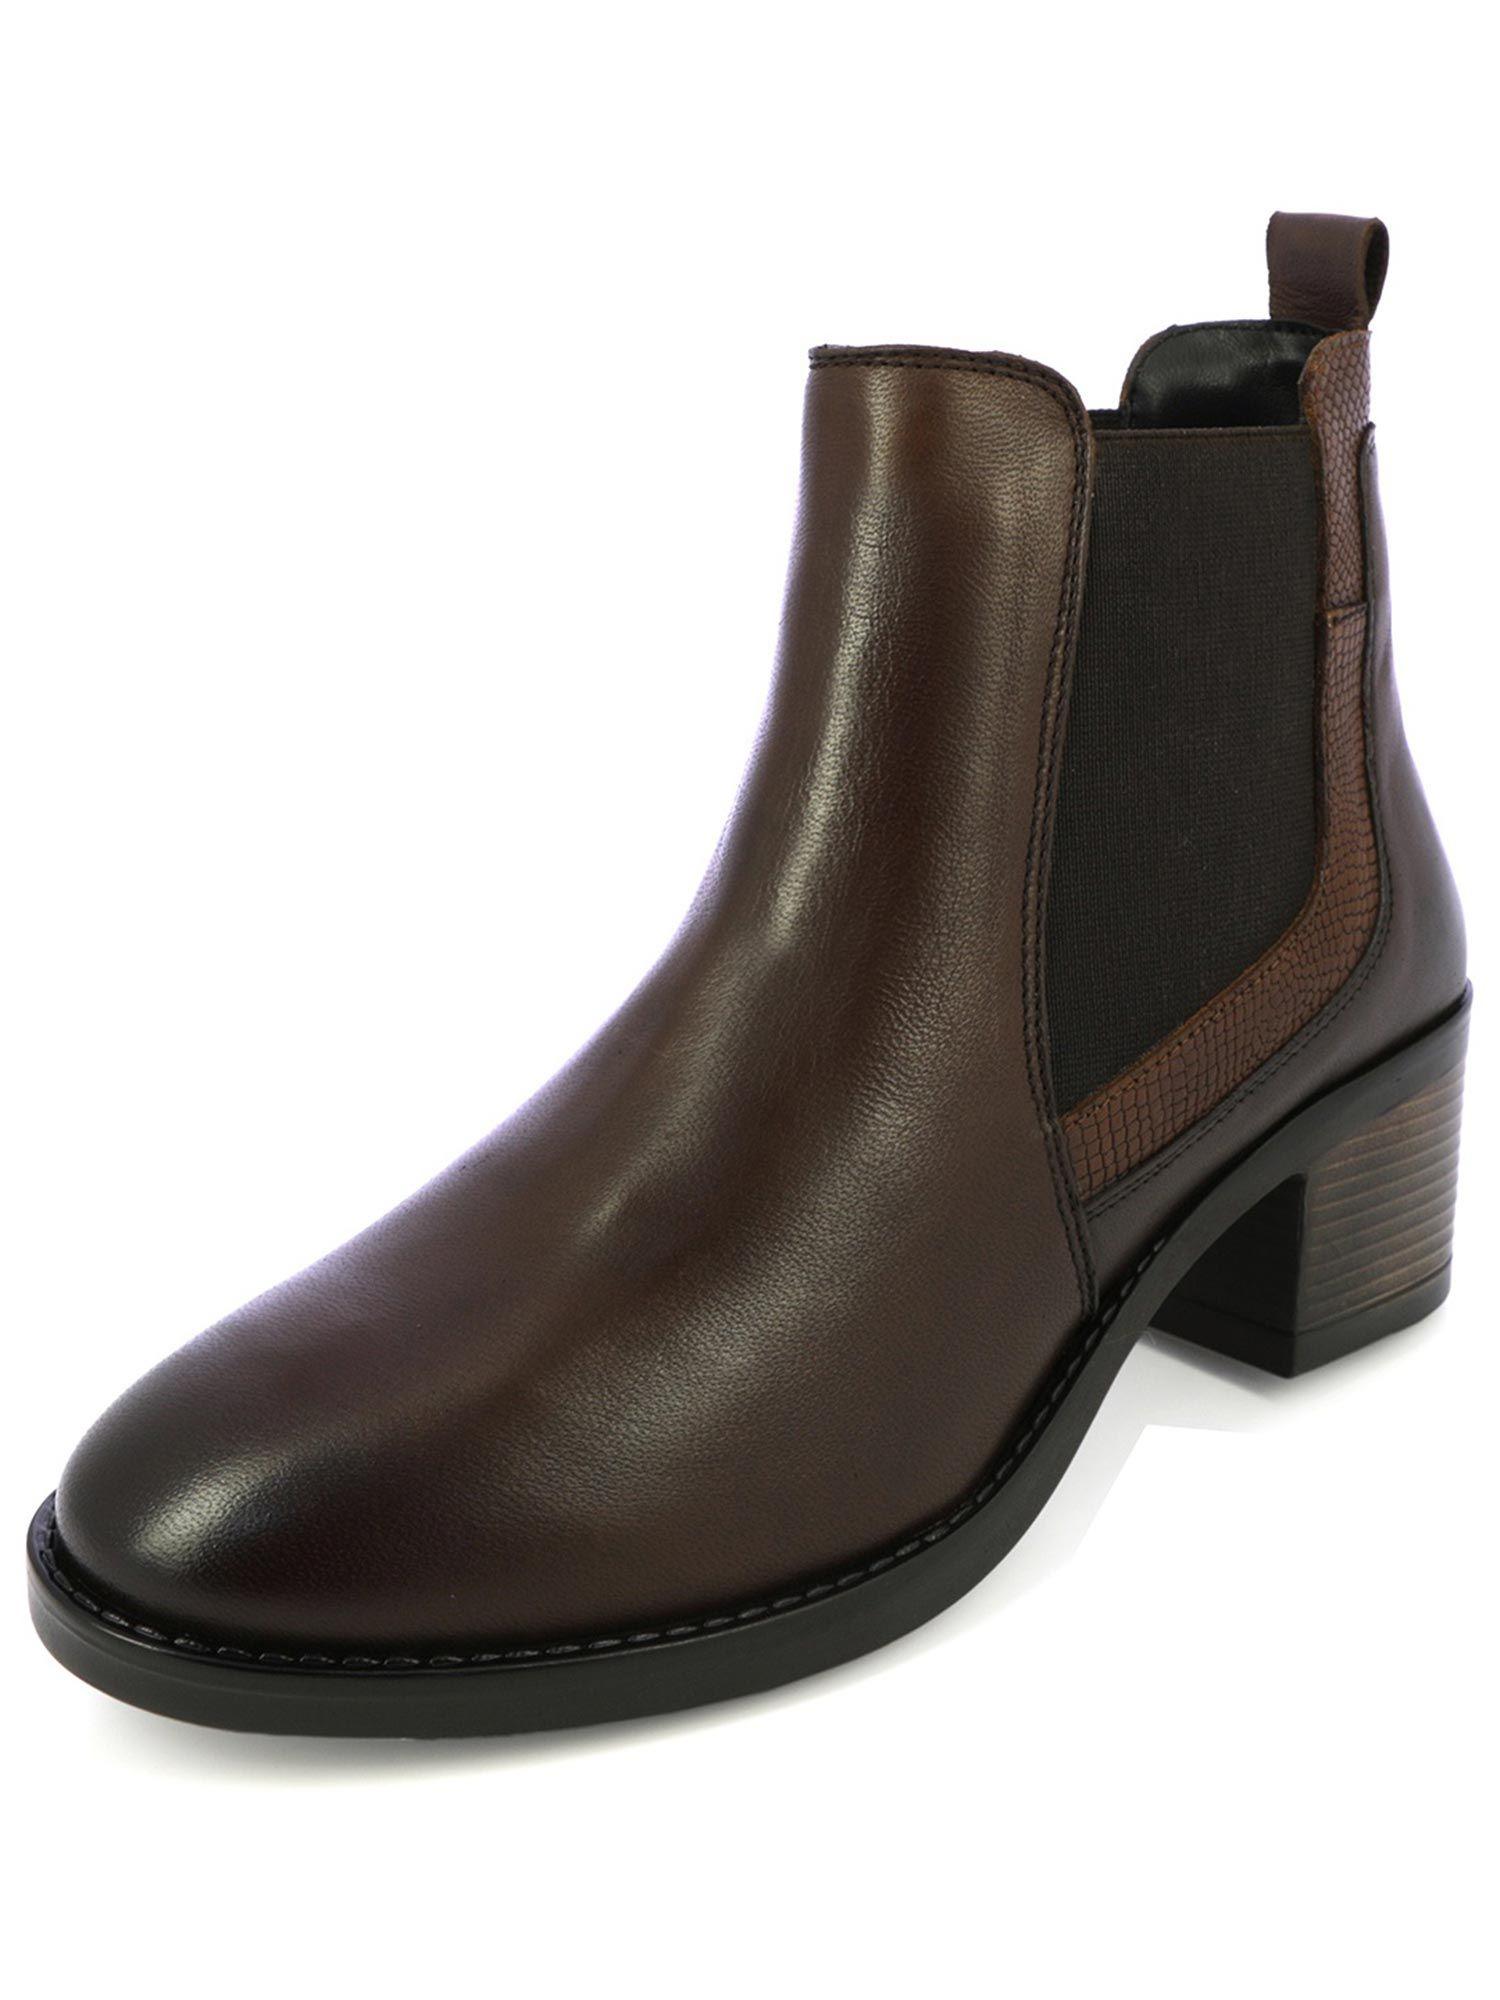 brown-chelsea-boots-with-block-heels